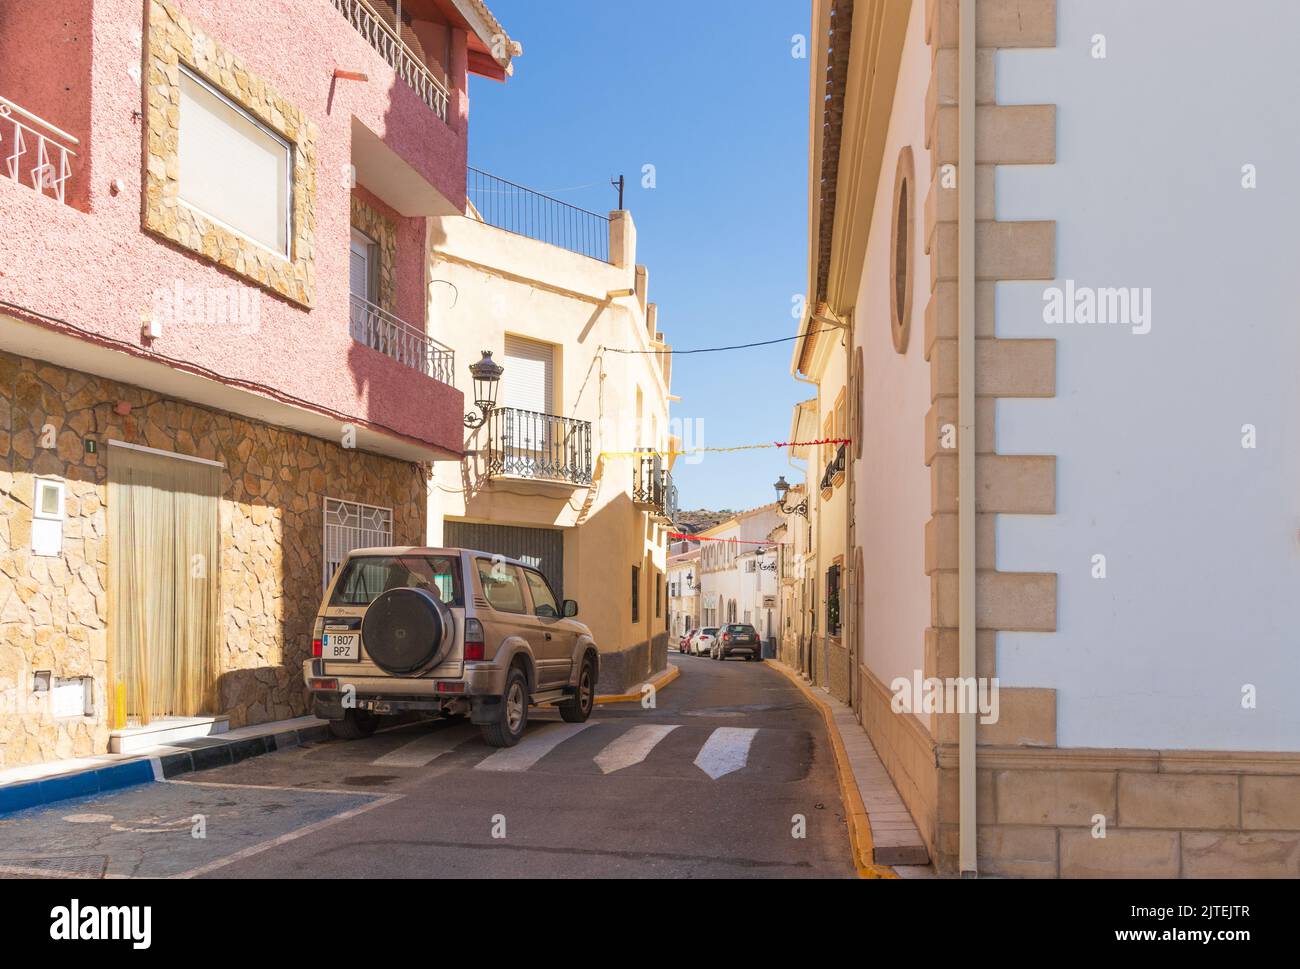 Narrow Street in Partaloa a Small Town in the Almanzora Valley, Almeria province, Andalucia Spain Stock Photo